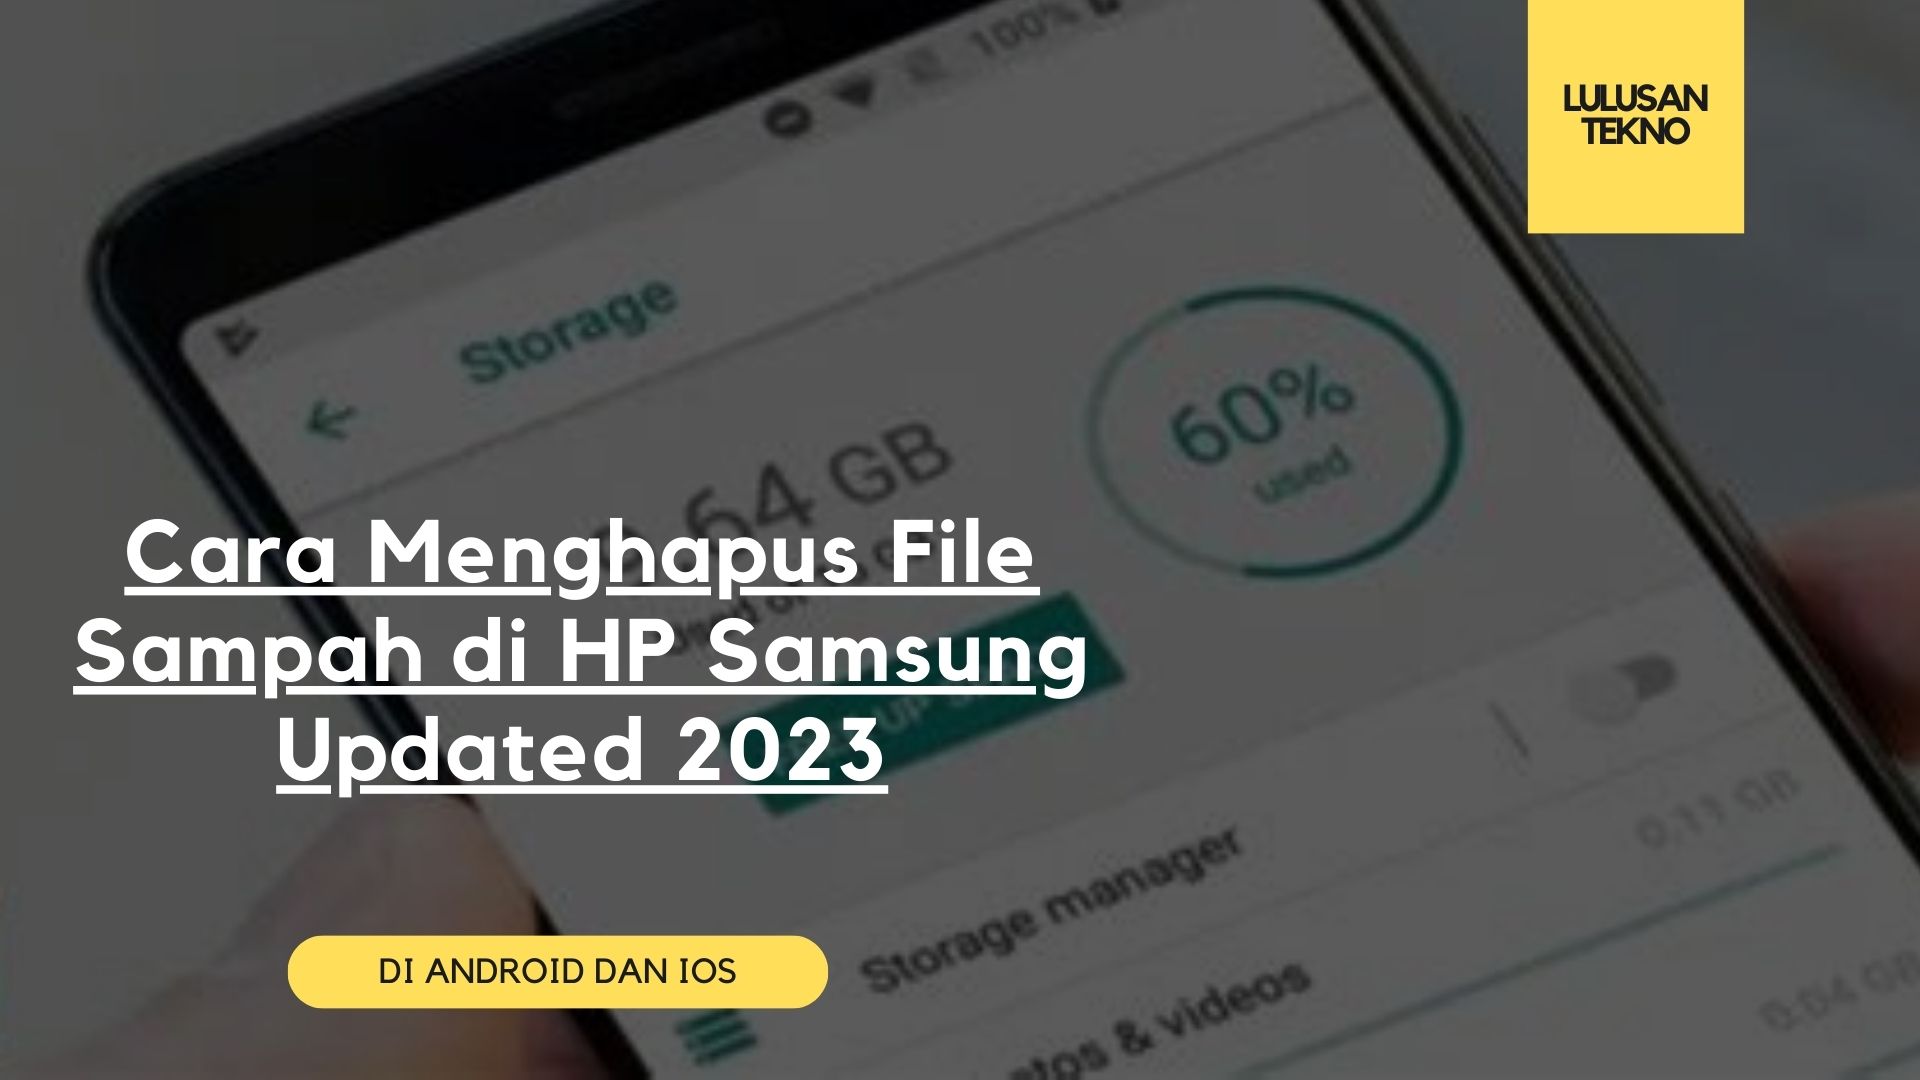 Cara Menghapus File Sampah di HP Samsung Updated 2023